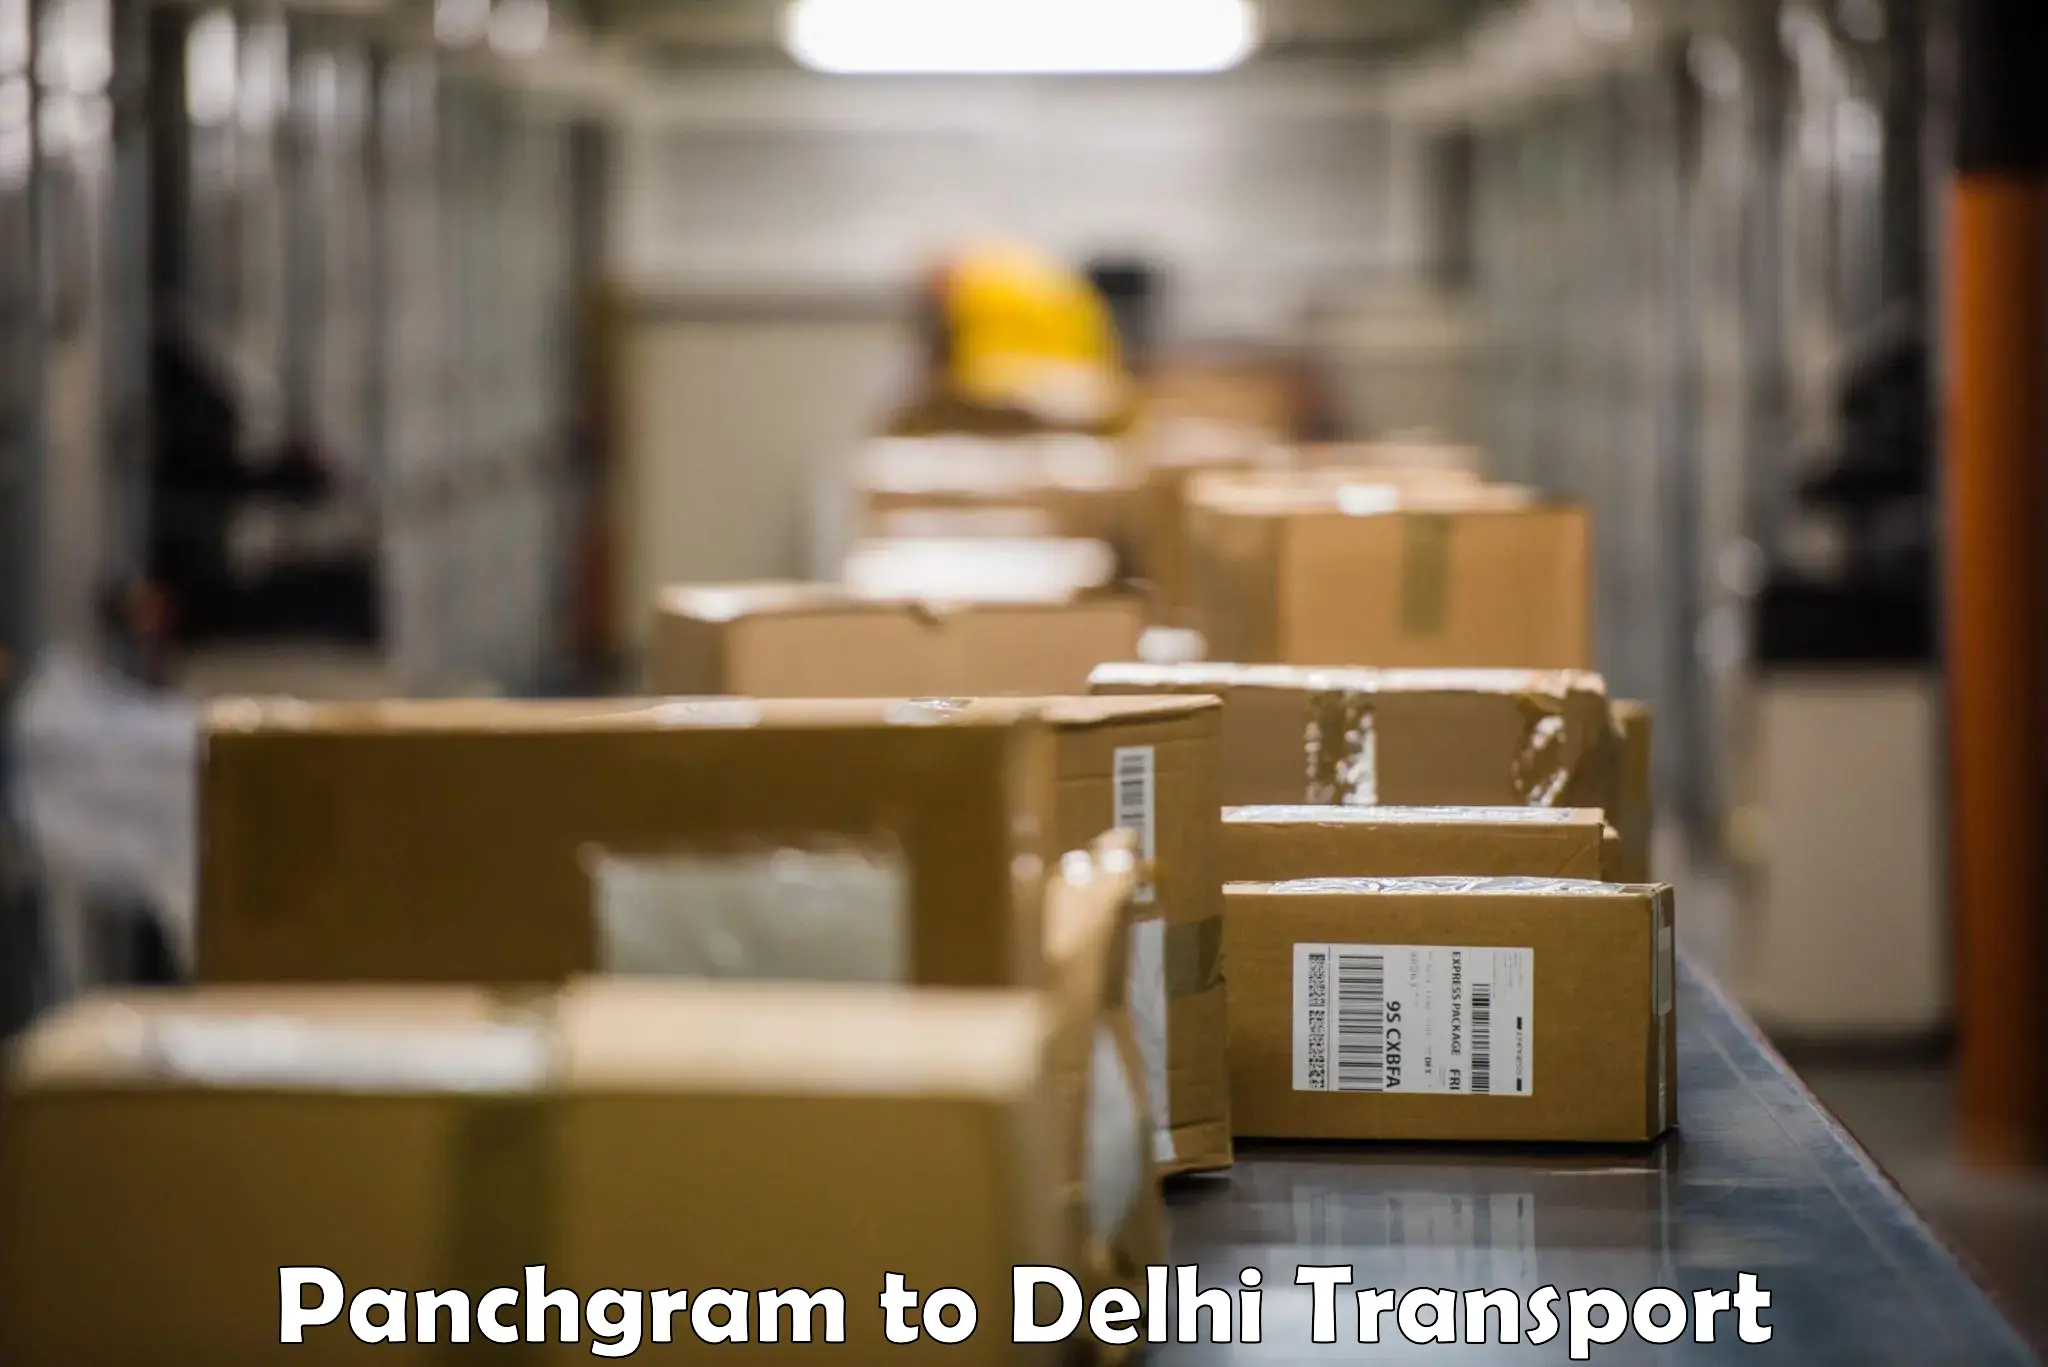 Furniture transport service Panchgram to Delhi Technological University DTU